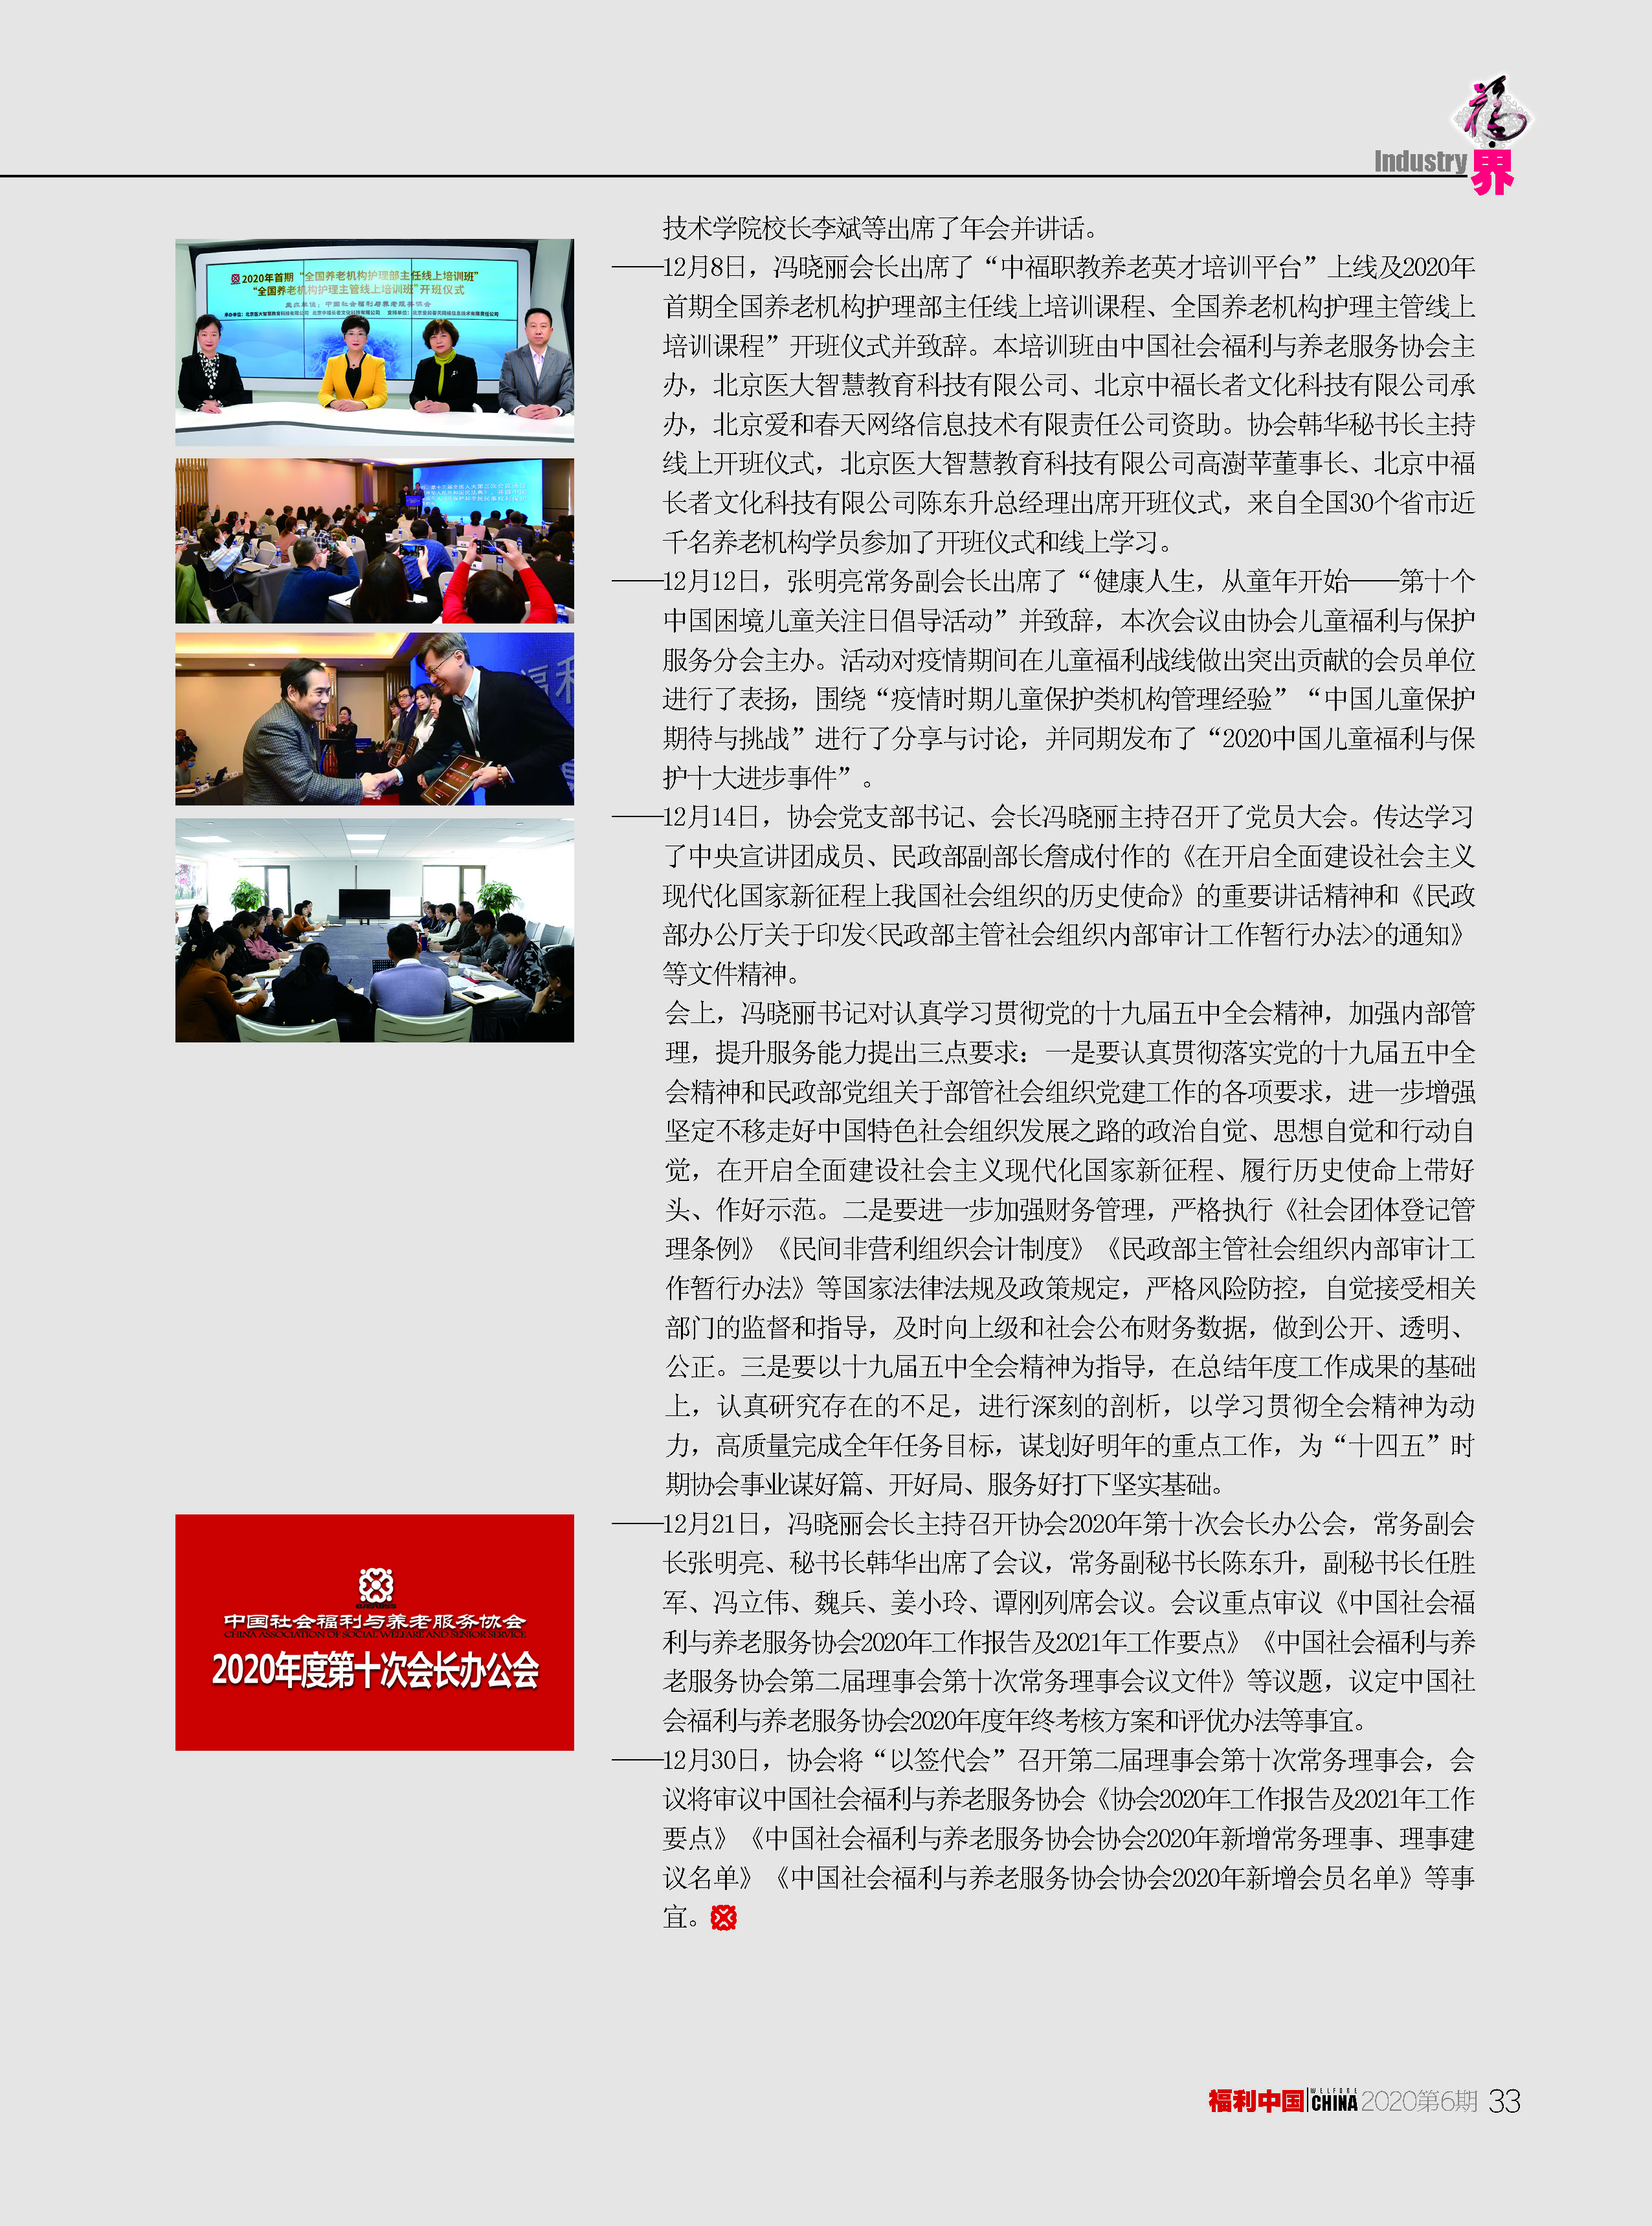 福利中国2020年6期内文_页面_33.jpg